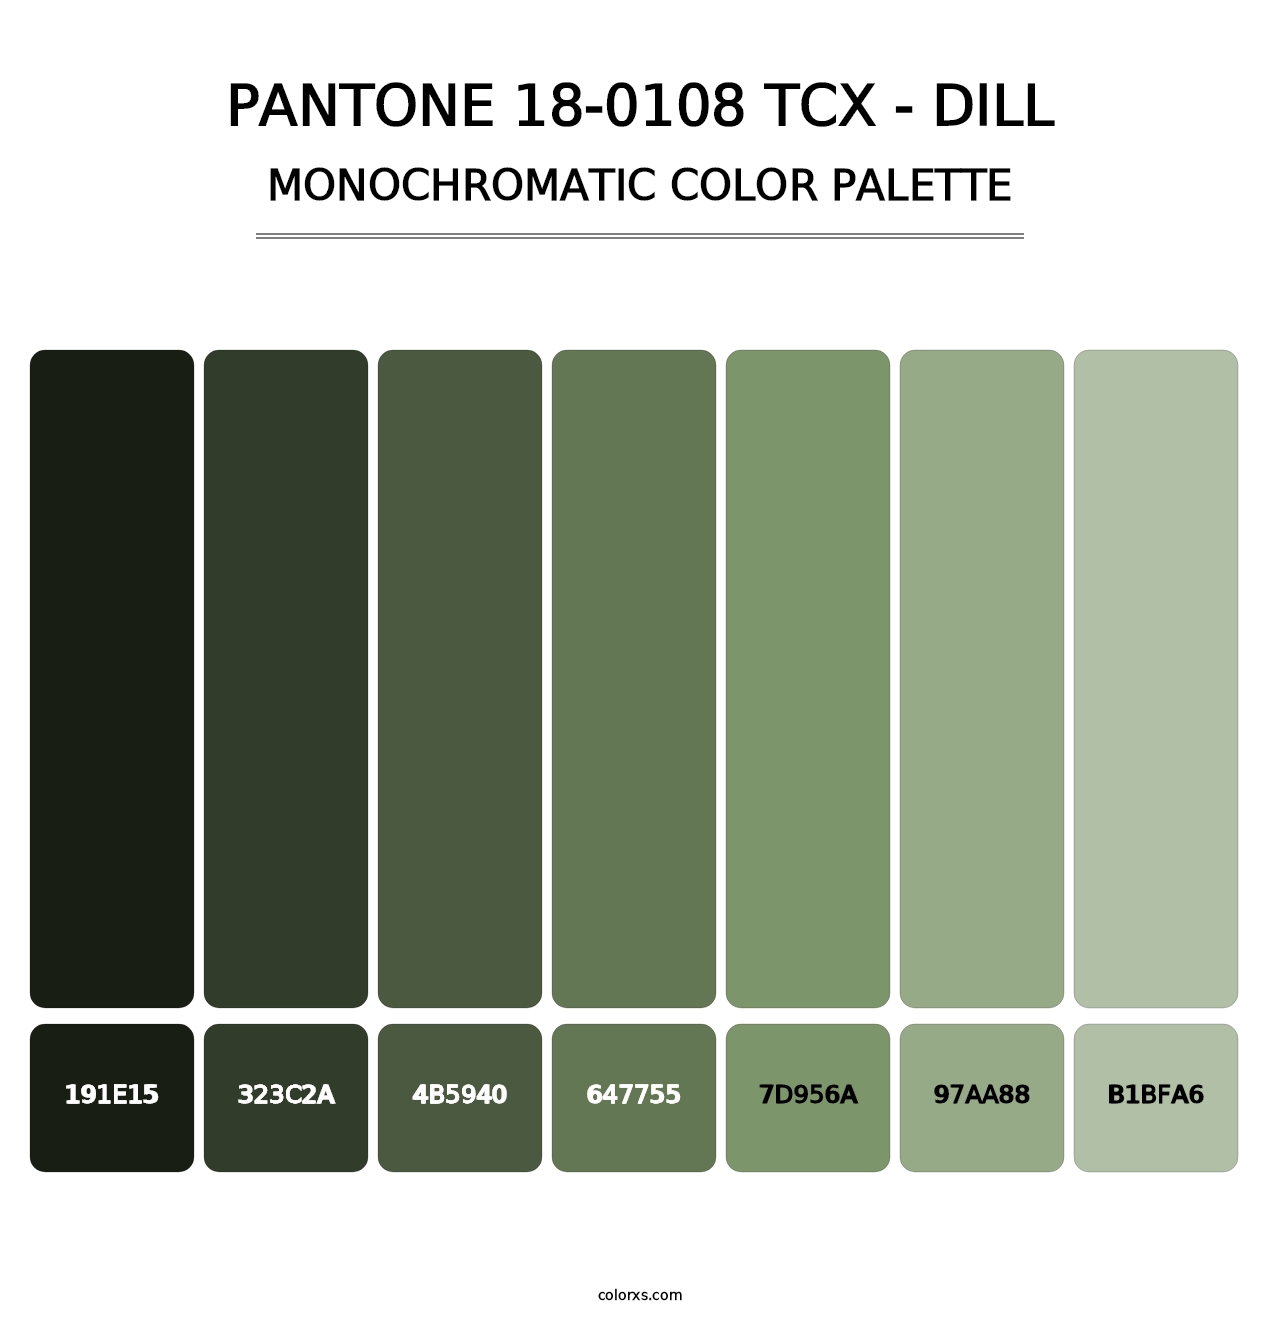 PANTONE 18-0108 TCX - Dill - Monochromatic Color Palette